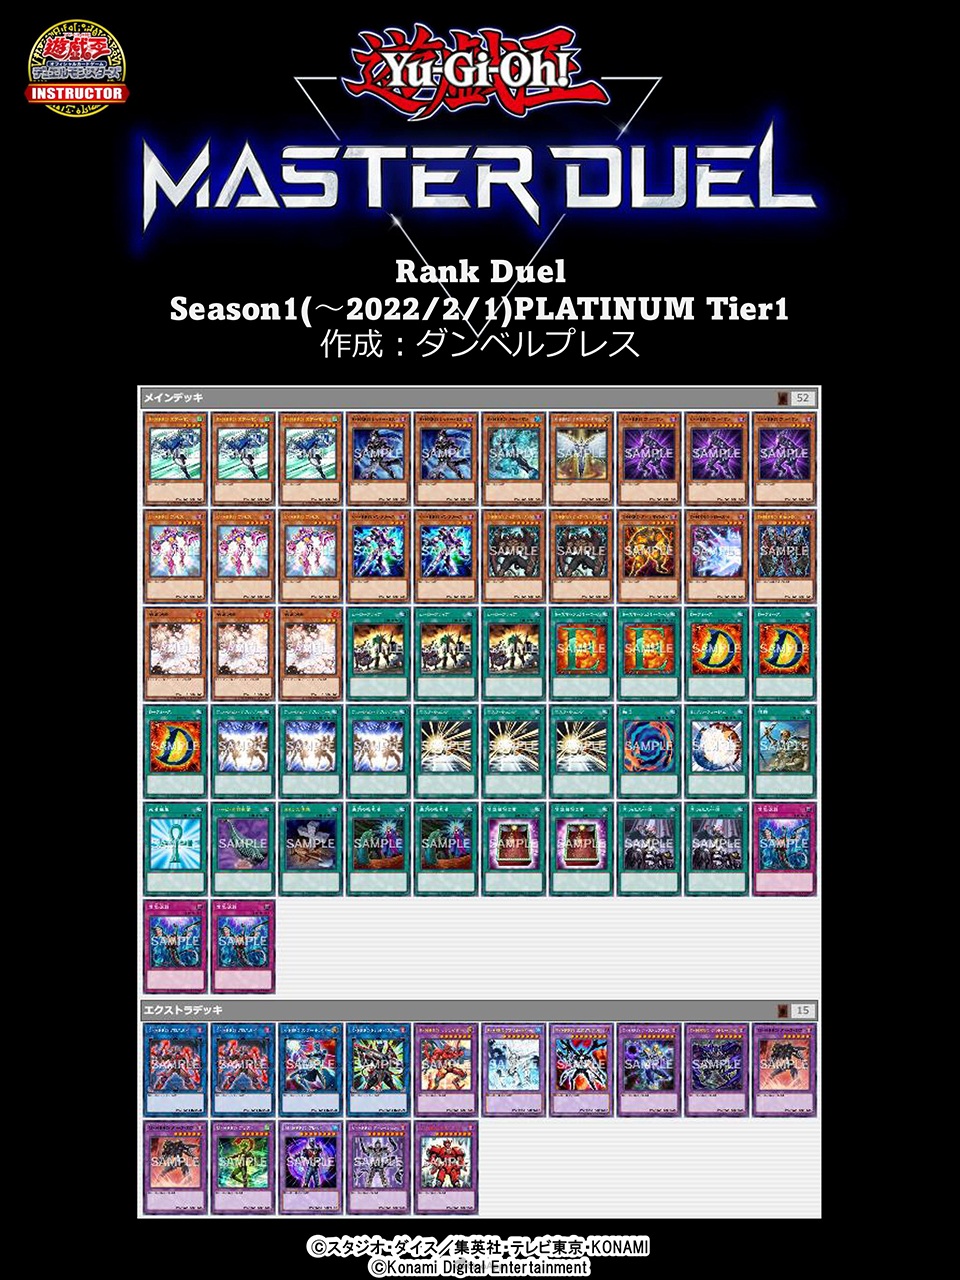 《遊戲王 Master Duel》突破千萬下載！Season 1白金牌組公開-第23張